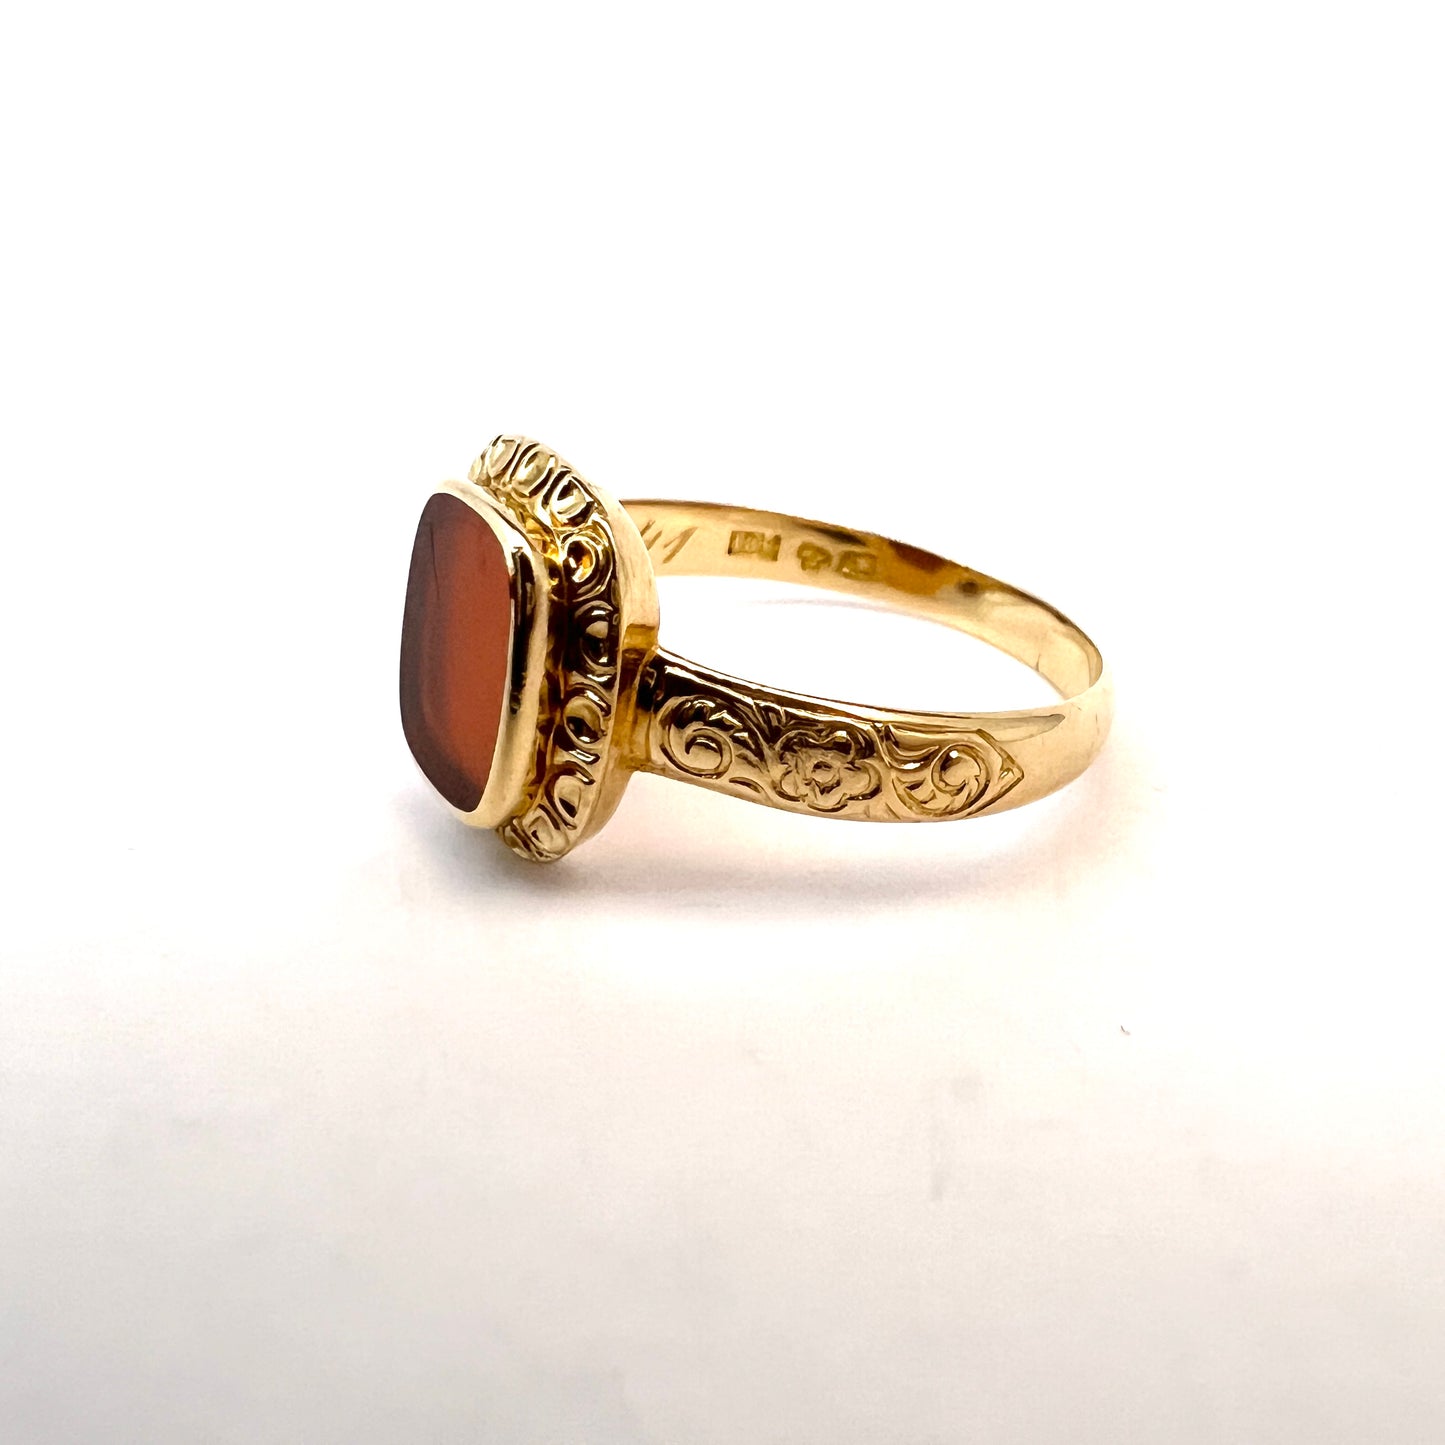 G Dahlgren, Sweden 1927. Vintage 18k Gold Carnelian Men's Signet Ring.